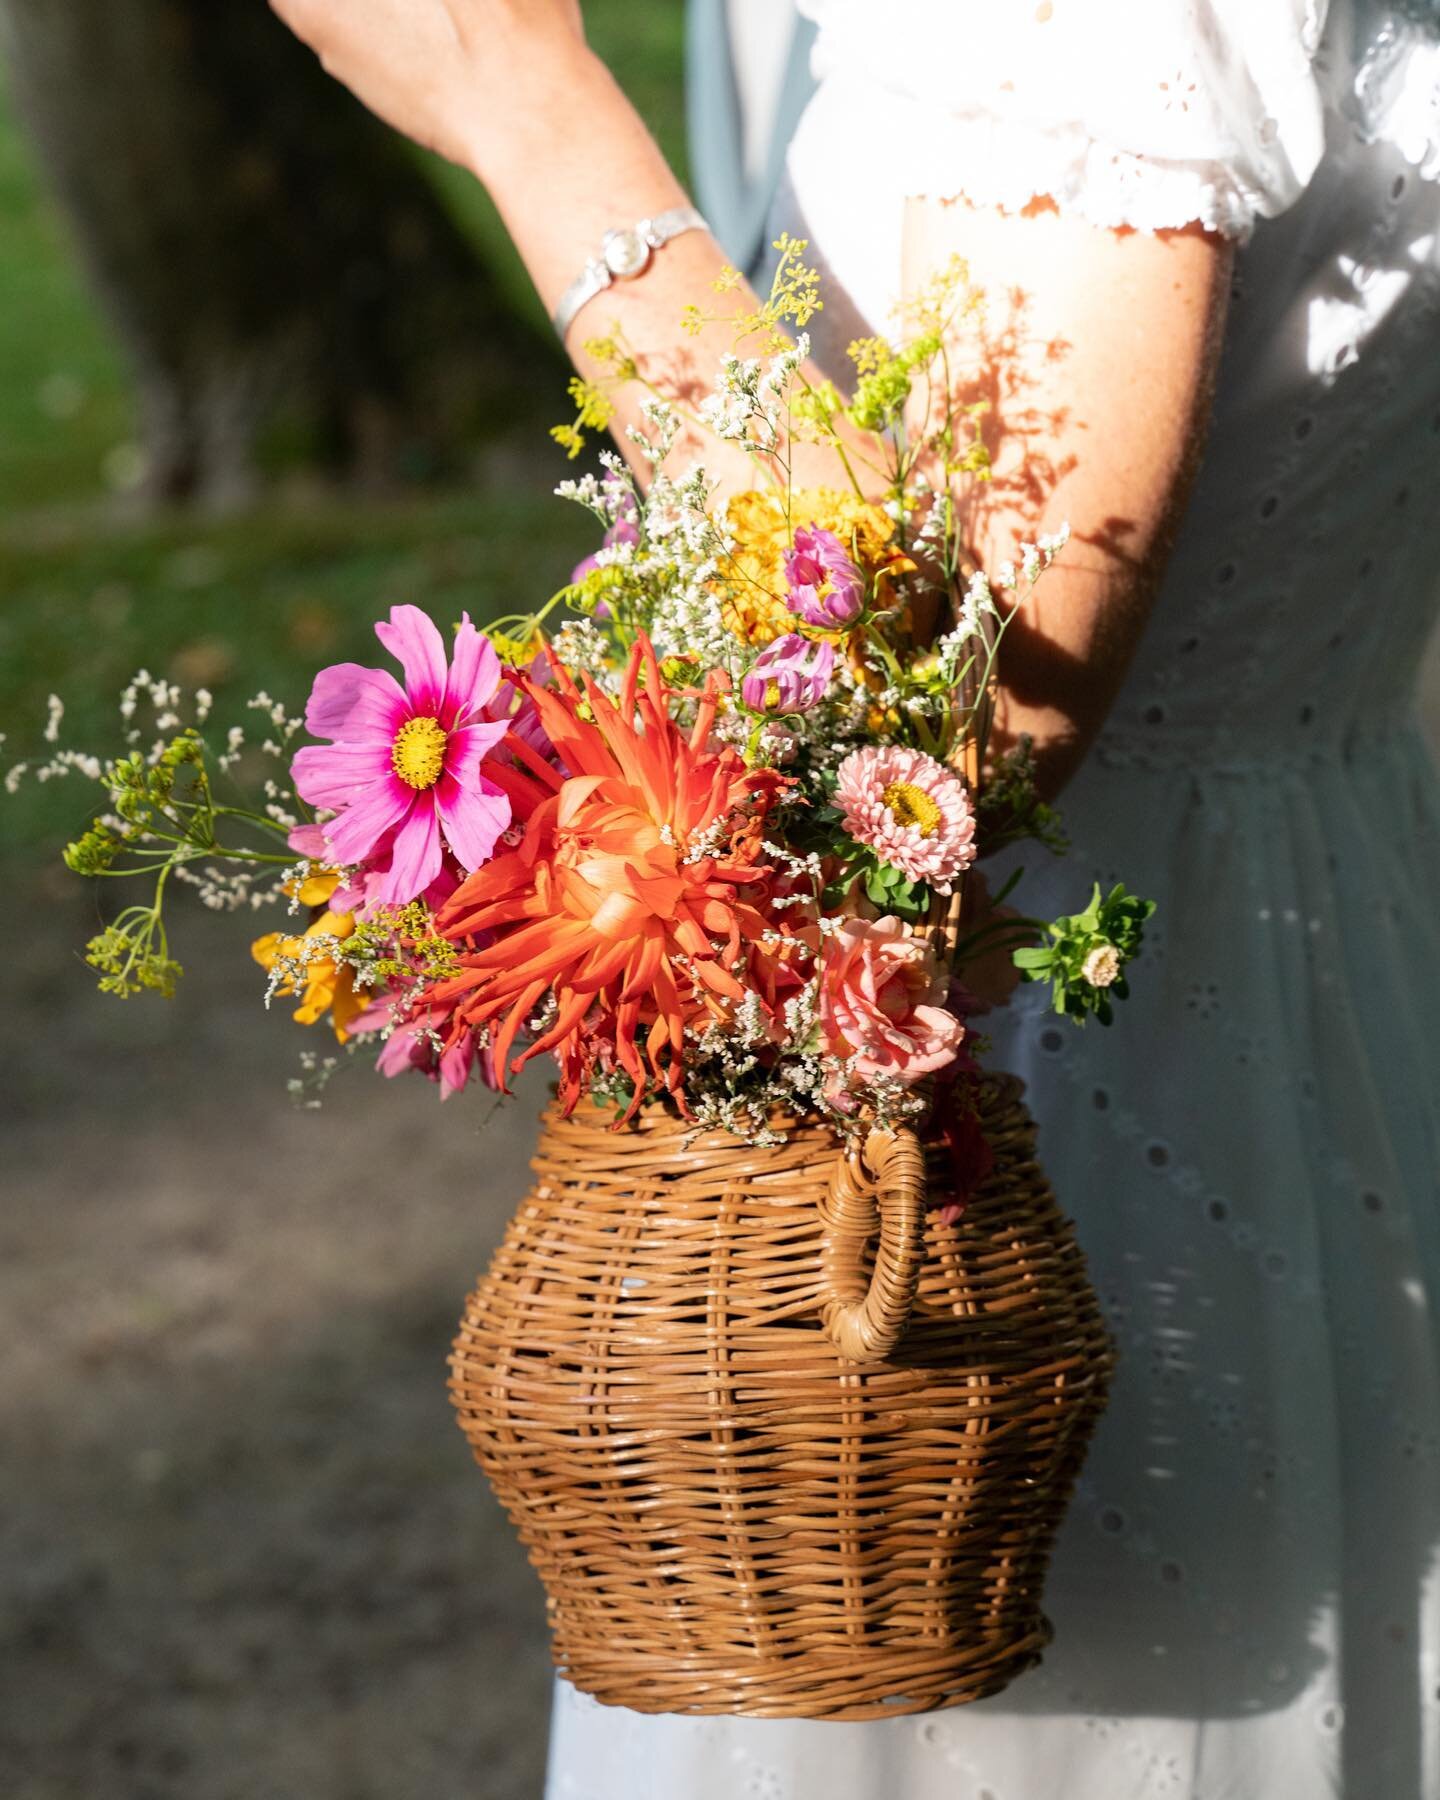 Se marier &agrave; la campagne

Pic by @cecilemoli 

#panierdefleurs #fleursdeschamps #bouquetdemari&eacute;e #bouquetdefleurs #mariagechampetre #weddingbouquet #basket #countrywedding #countryfication